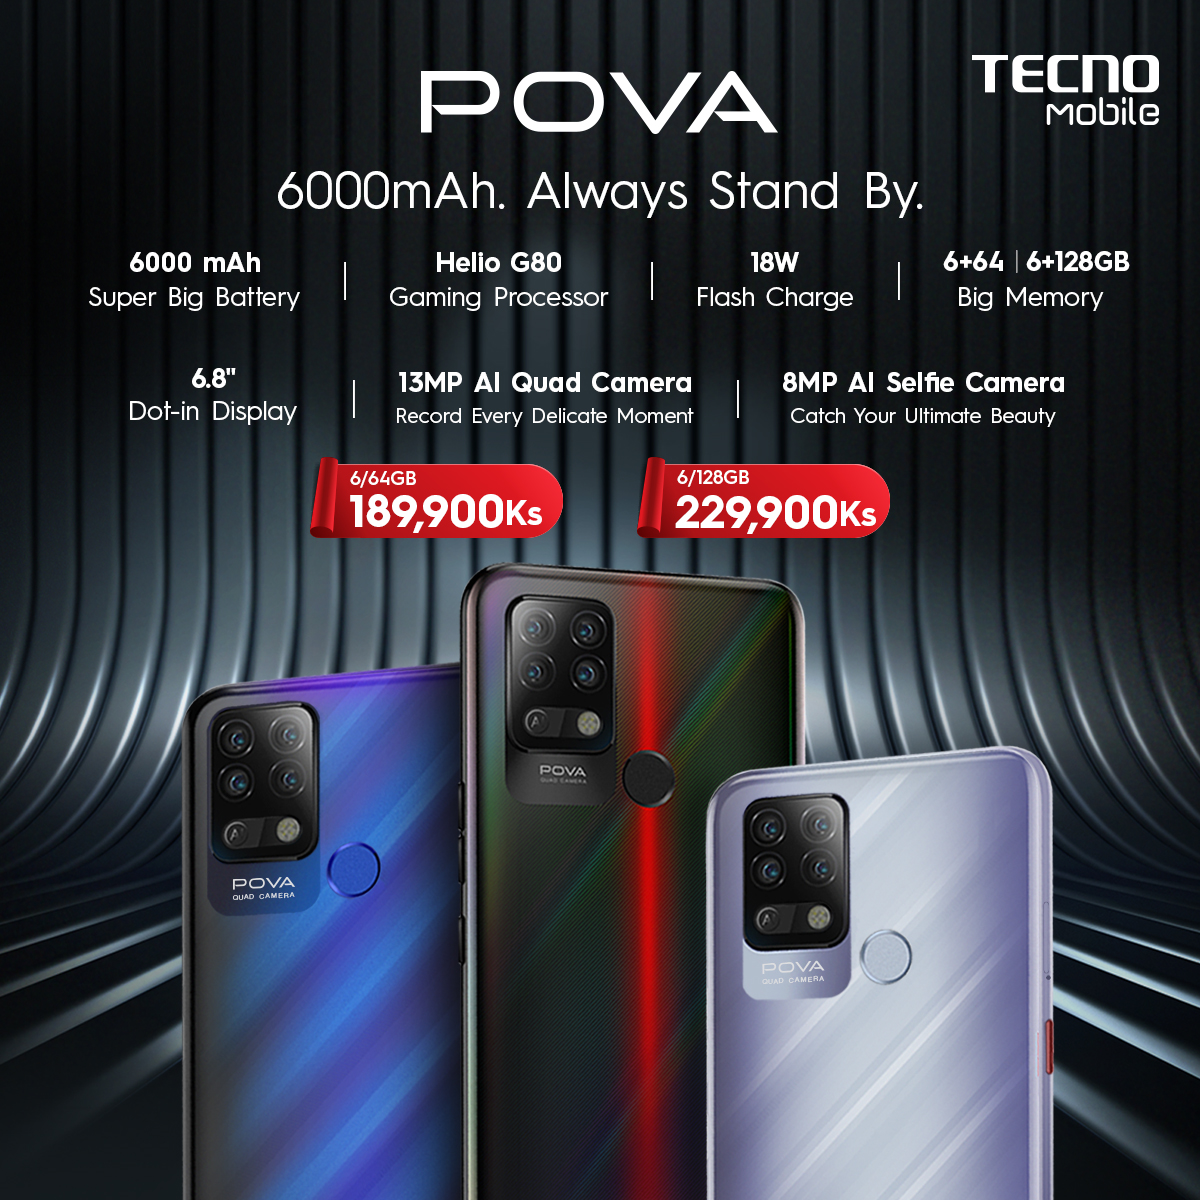 TECNO Mobile သည် POVA စမတ်ဖုန်းကို မြန်မာနိုင်ငံဈေးကွက်တွင် ပထမဆုံးစတင်မိတ်ဆက်